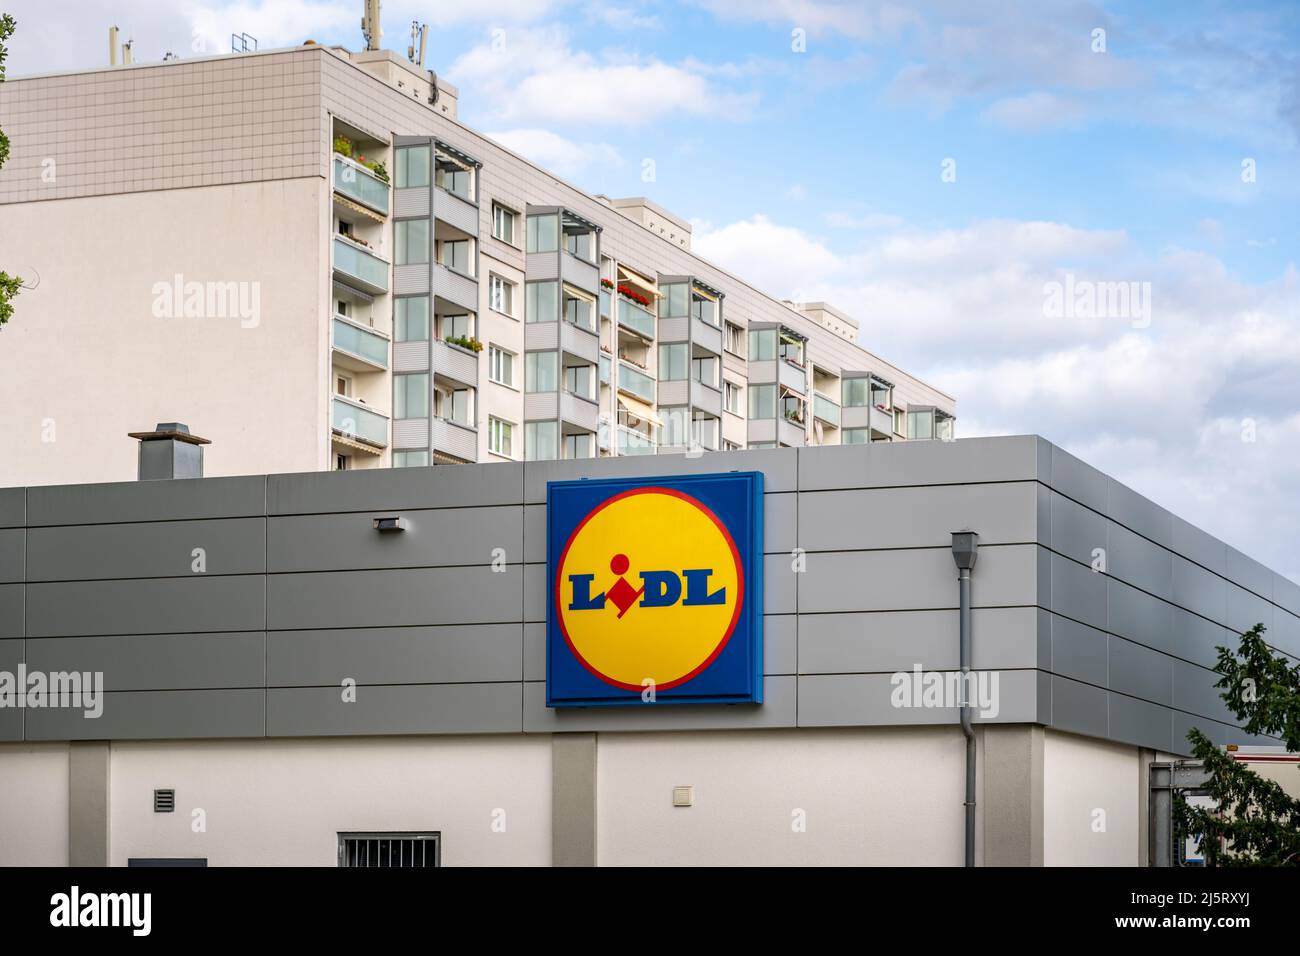 Supermarché Lidl en face d'un immeuble résidentiel dans la ville. Célèbre épicerie avec un grand logo sur la façade. L'escompteur alimentaire en Europe. Banque D'Images